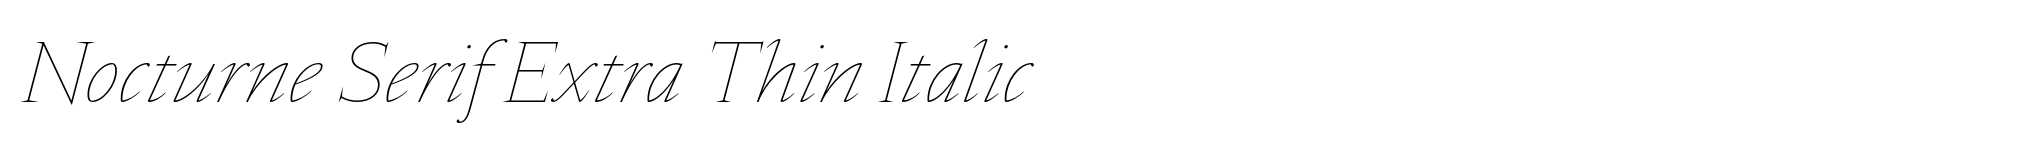 Nocturne Serif Extra Thin Italic image